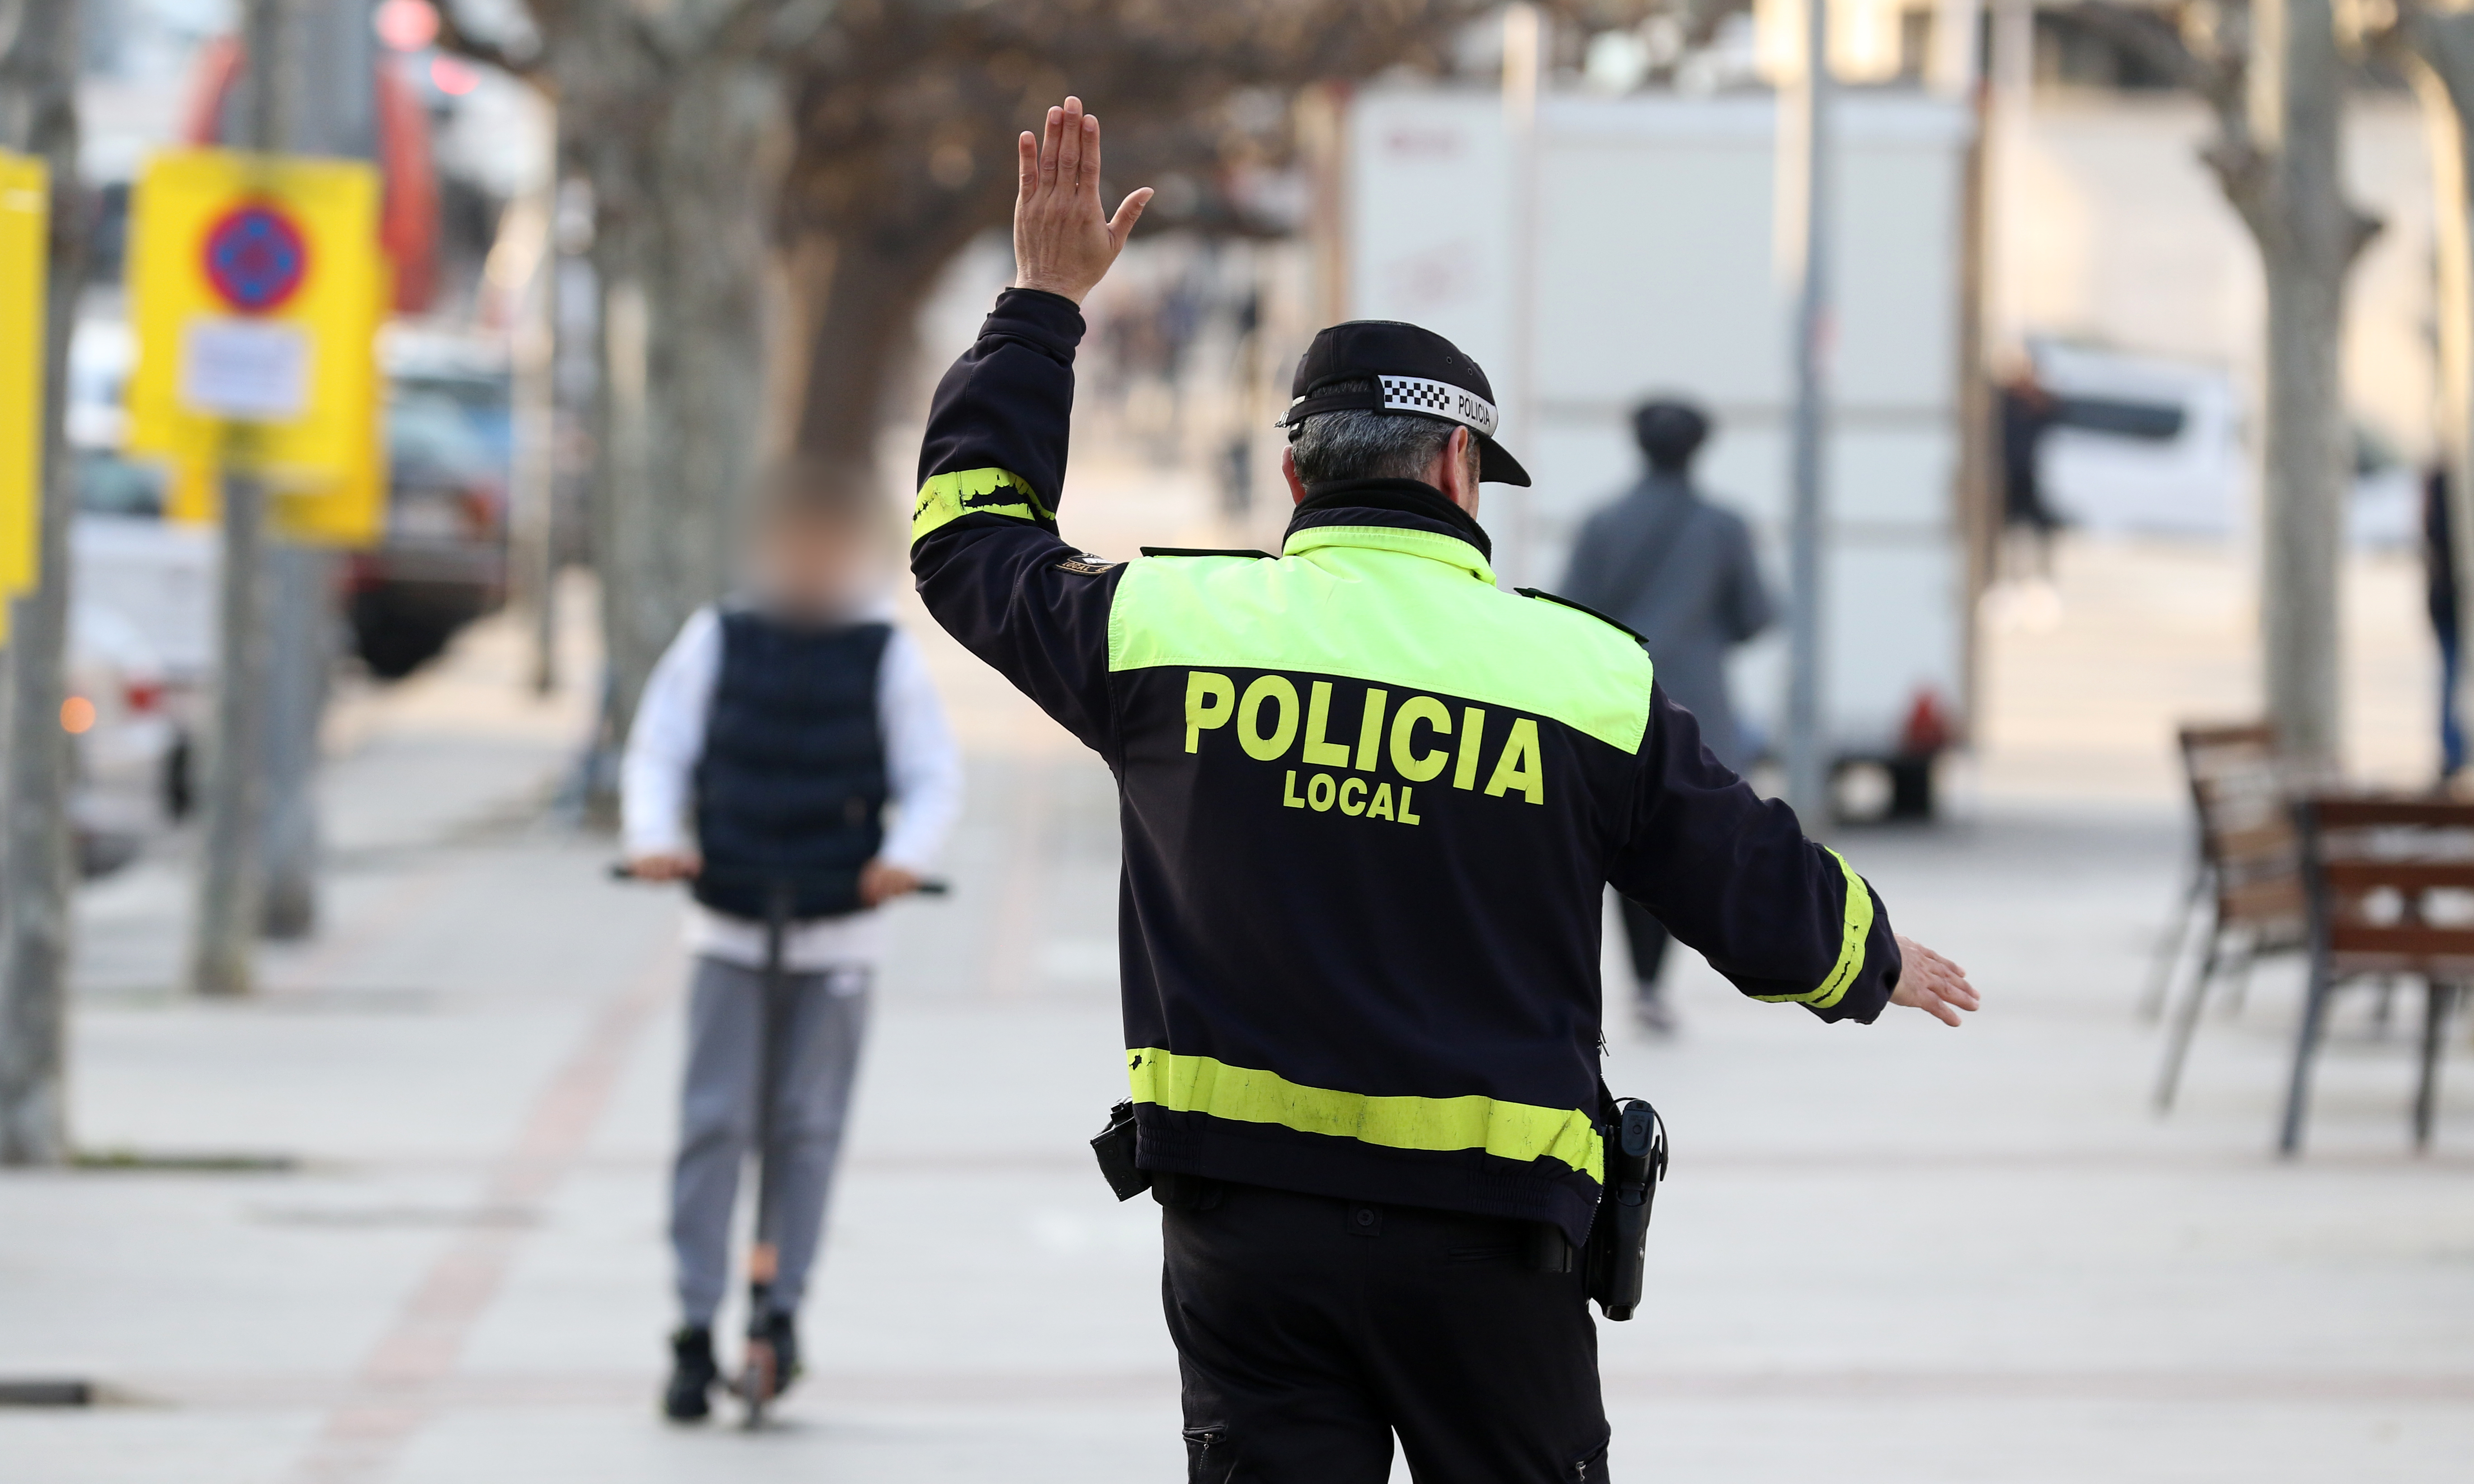 Oberta una convocatòria per incorporar agents de Policia Local a Sant Andreu de la Barca